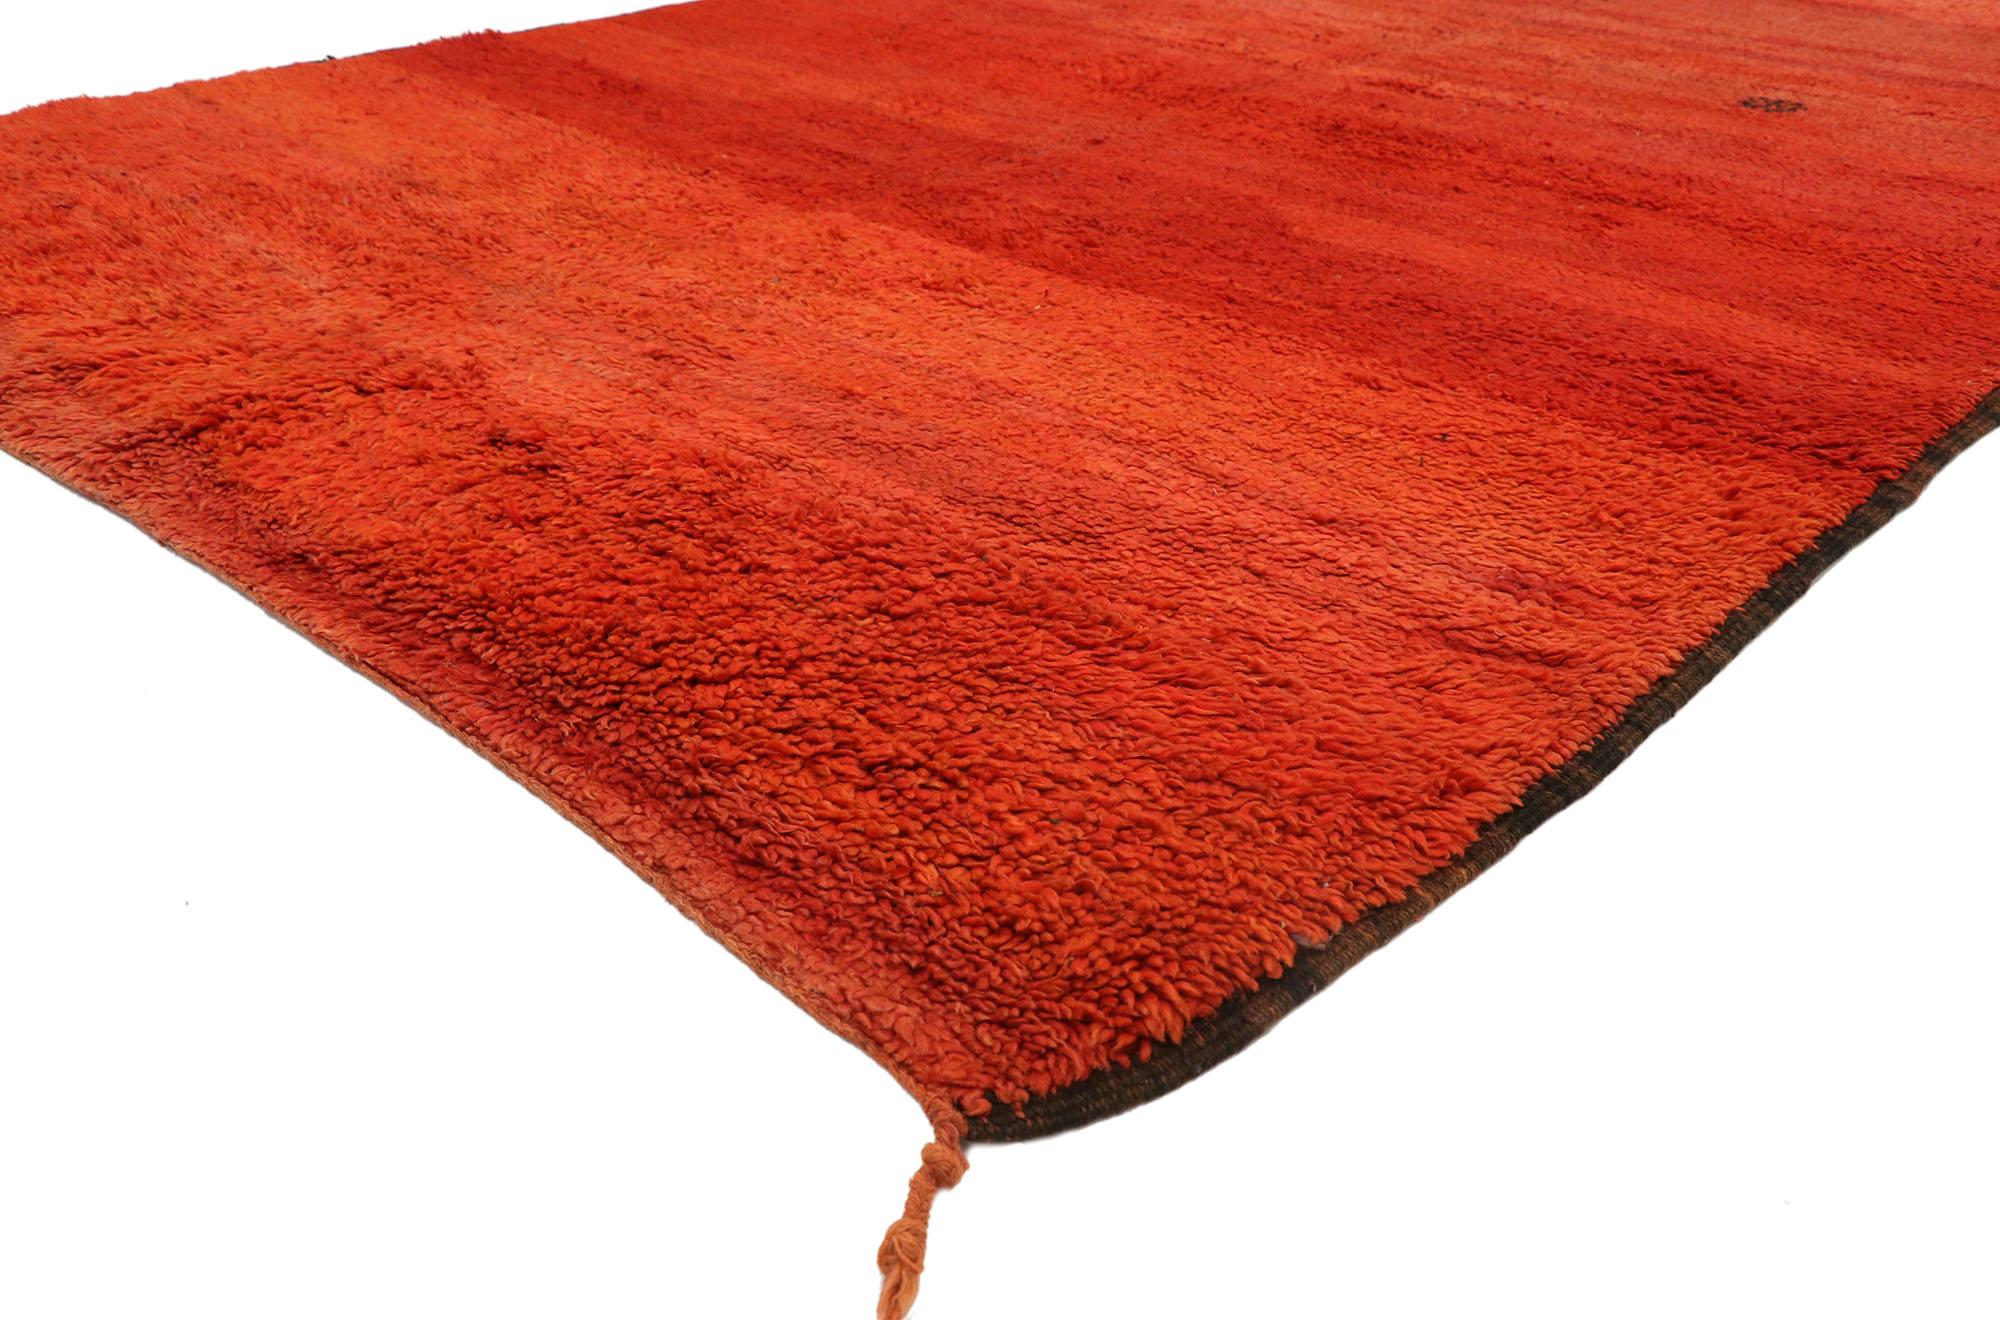 21017 Tapis marocain Beni Mrirt rouge vintage, 06'11 x 10'08.

Ce tapis marocain vintage Beni Mrirt en laine nouée à la main est un chef-d'œuvre de la région de Mrirt dans les montagnes du Moyen Atlas, méticuleusement fabriqué par la tribu Beni